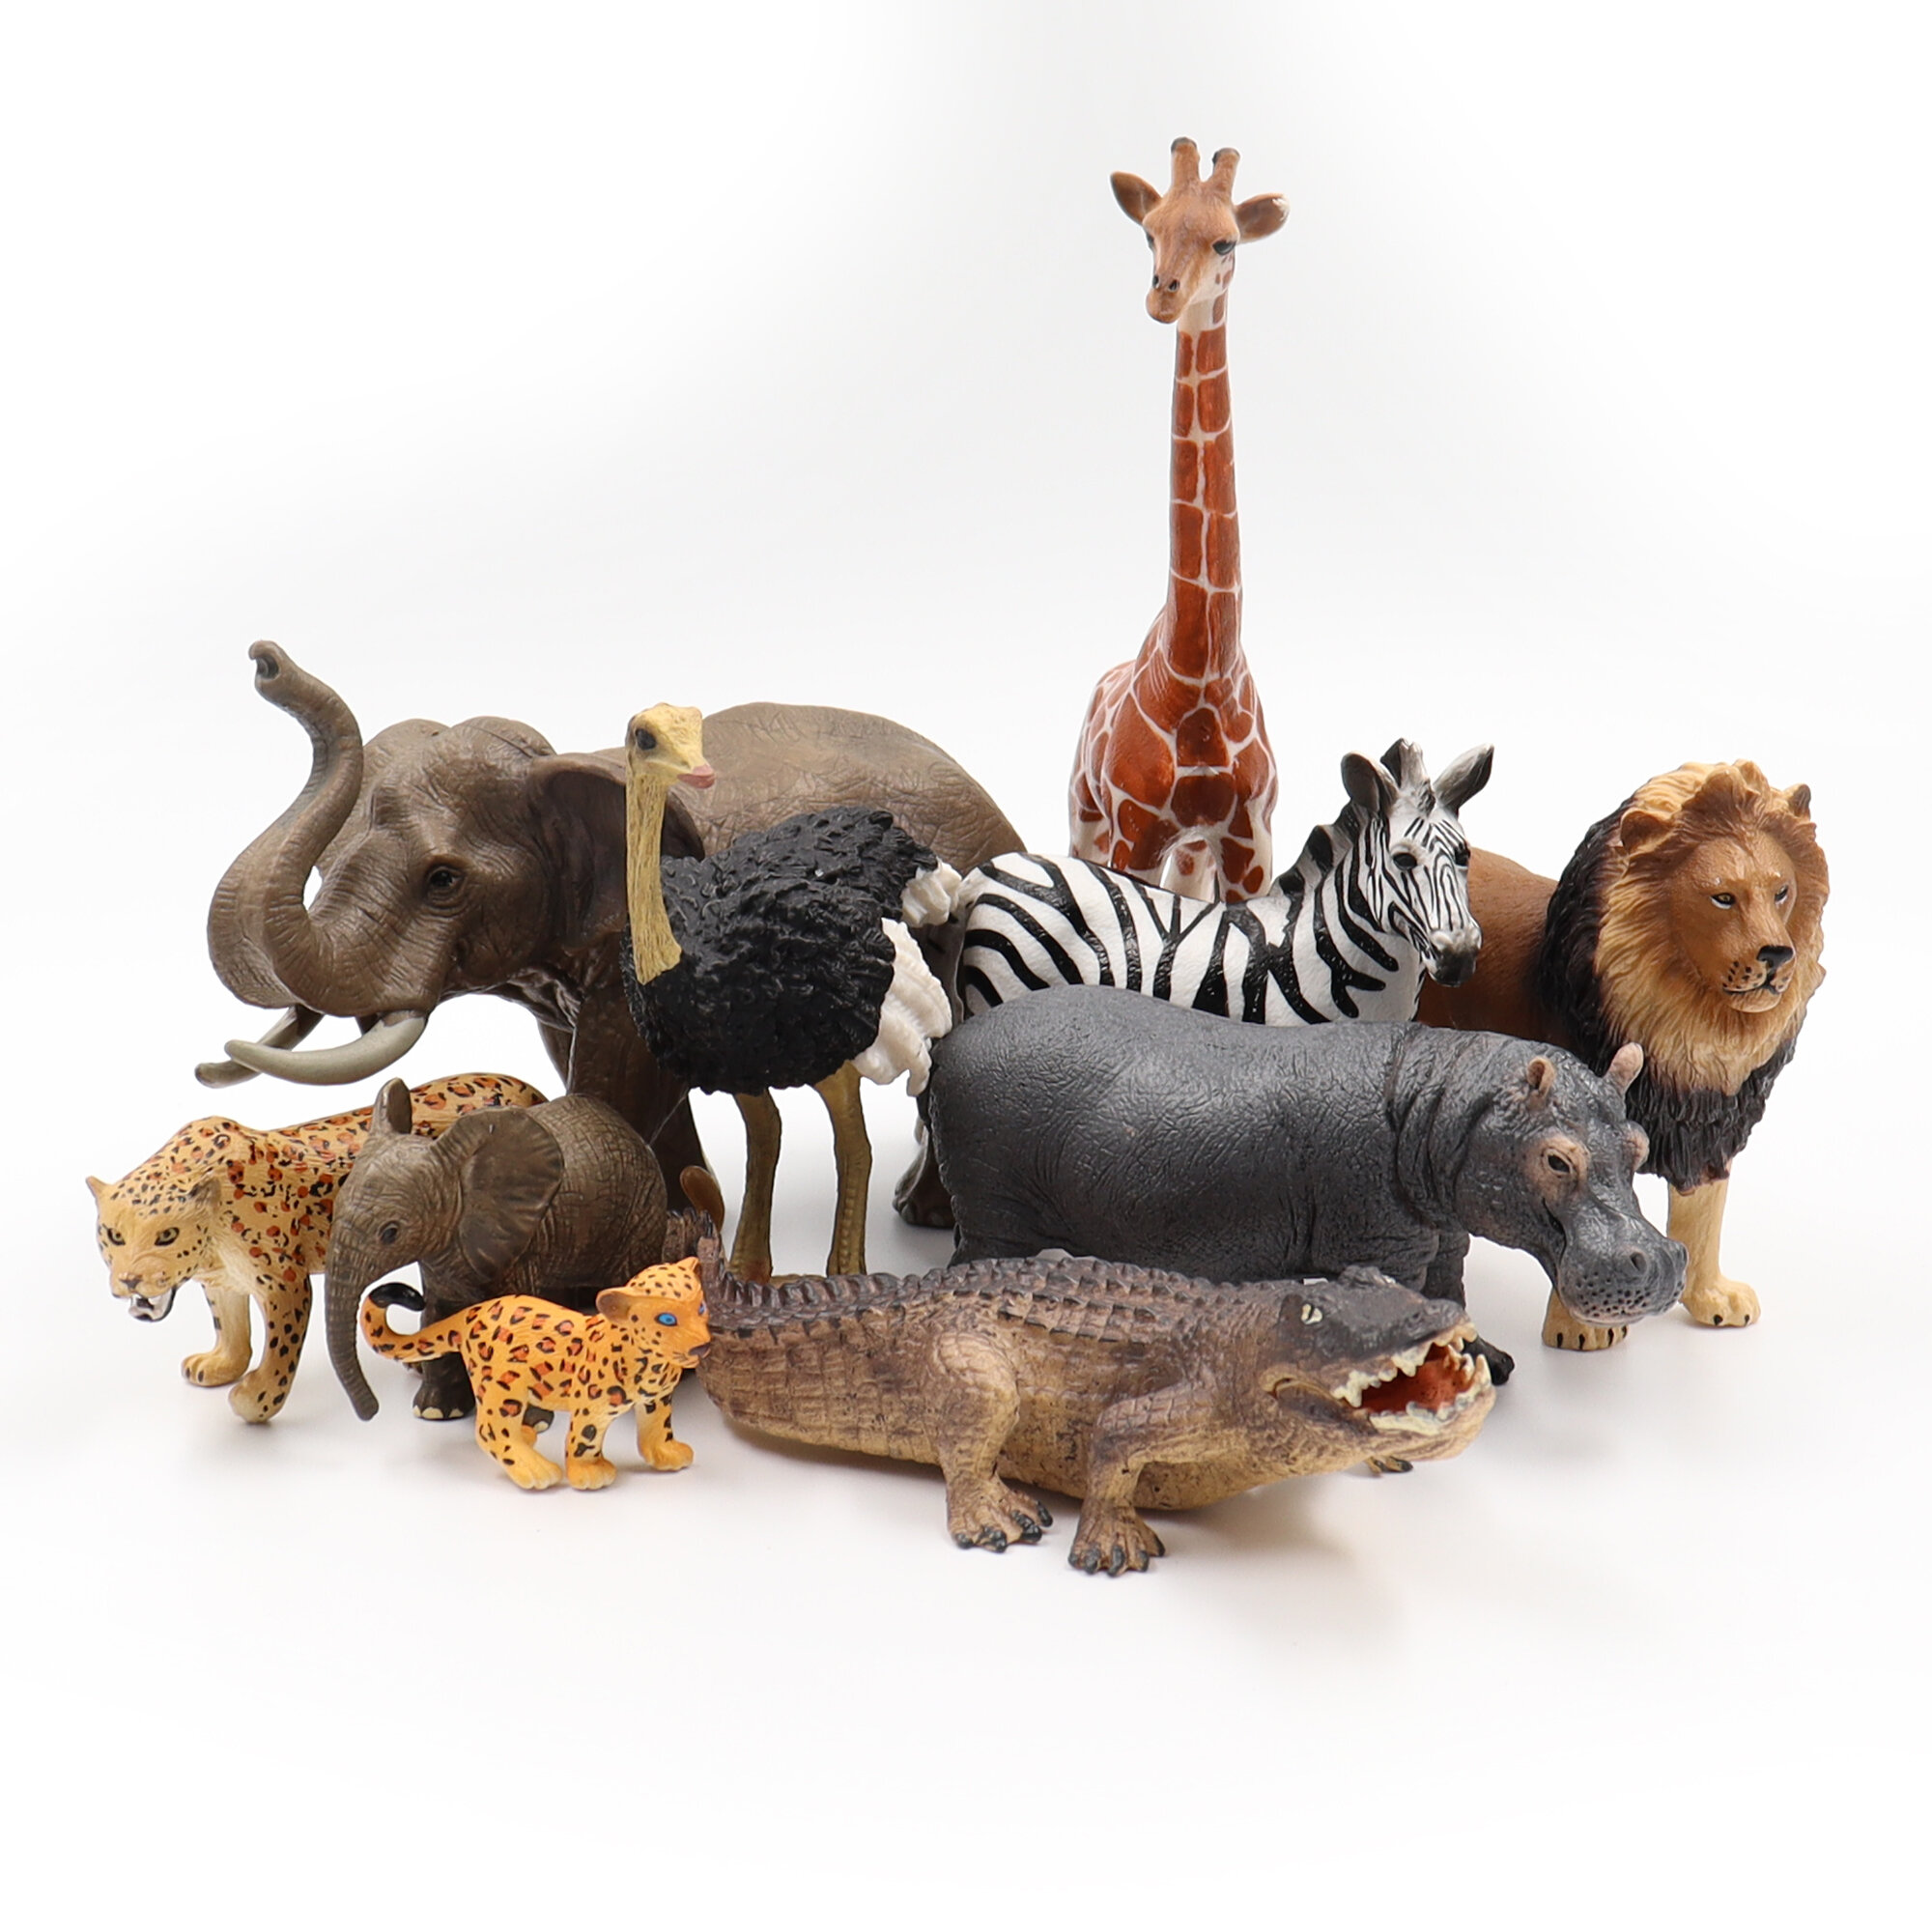 Фигурки диких животных, детский игровой набор Zateyo Сафари, игрушка для детей коллекционная, декоративная, 10 шт.